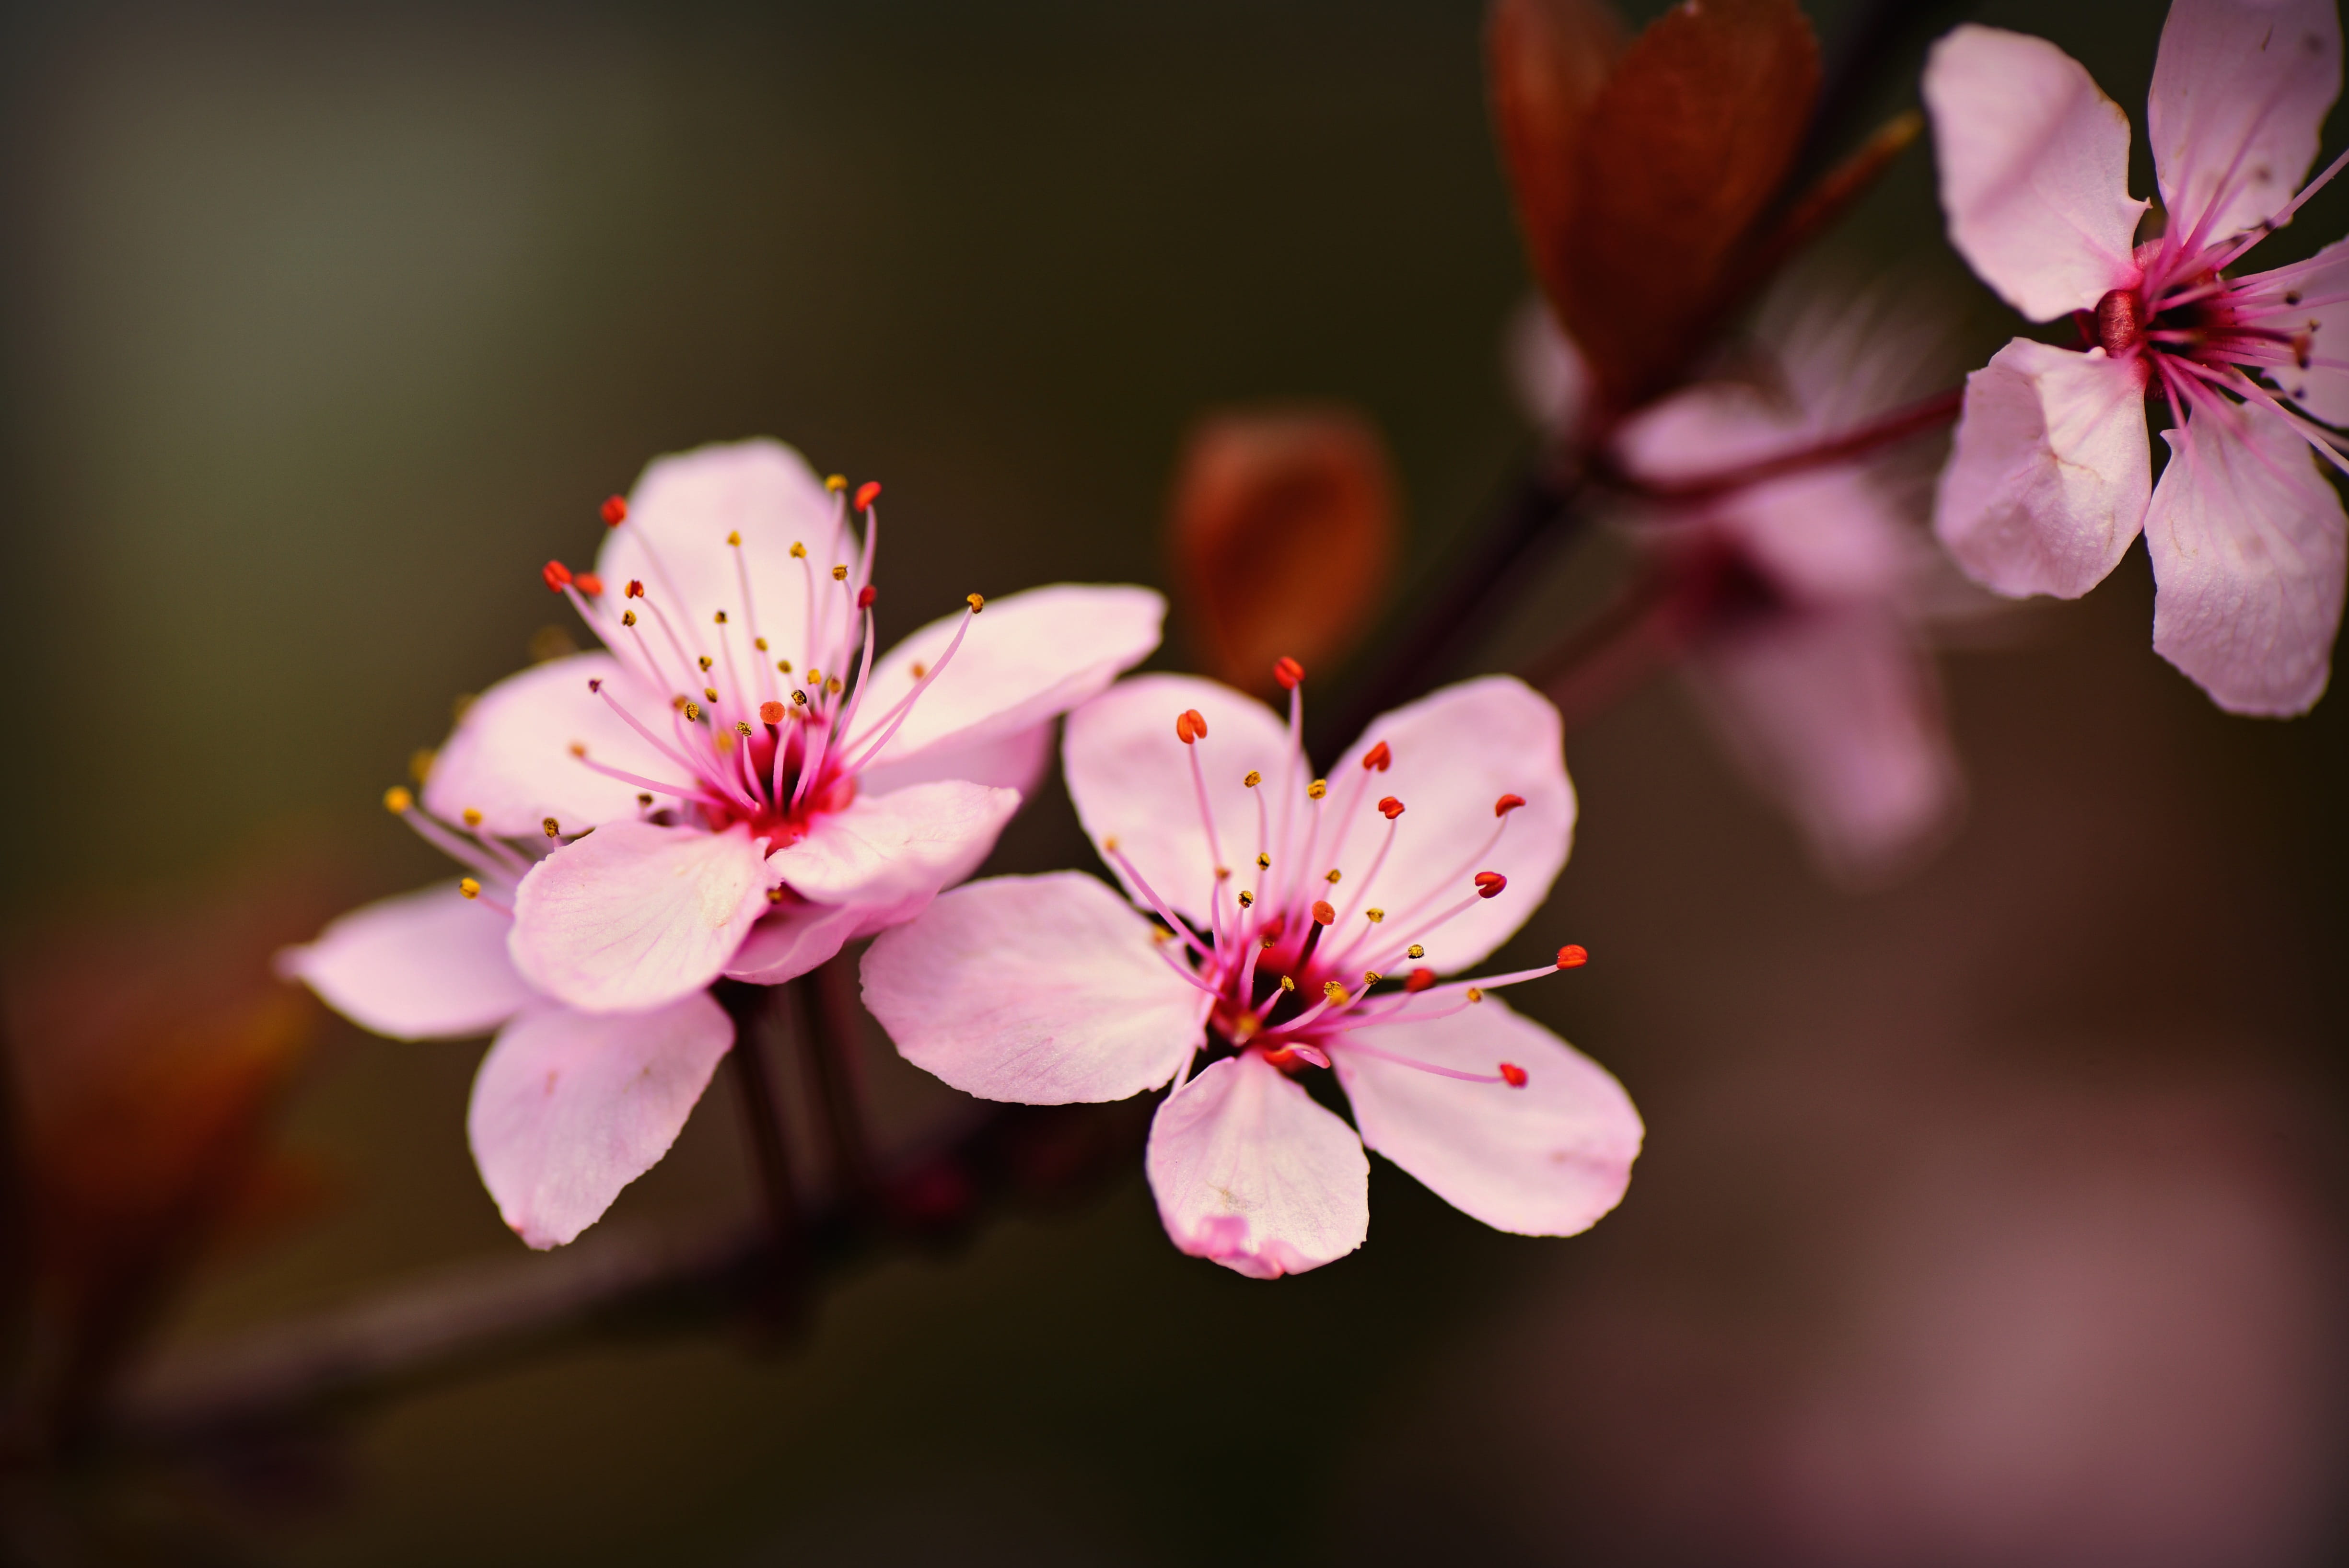 cherry blossom, flower, tree, branch, pistil, petal, japanese